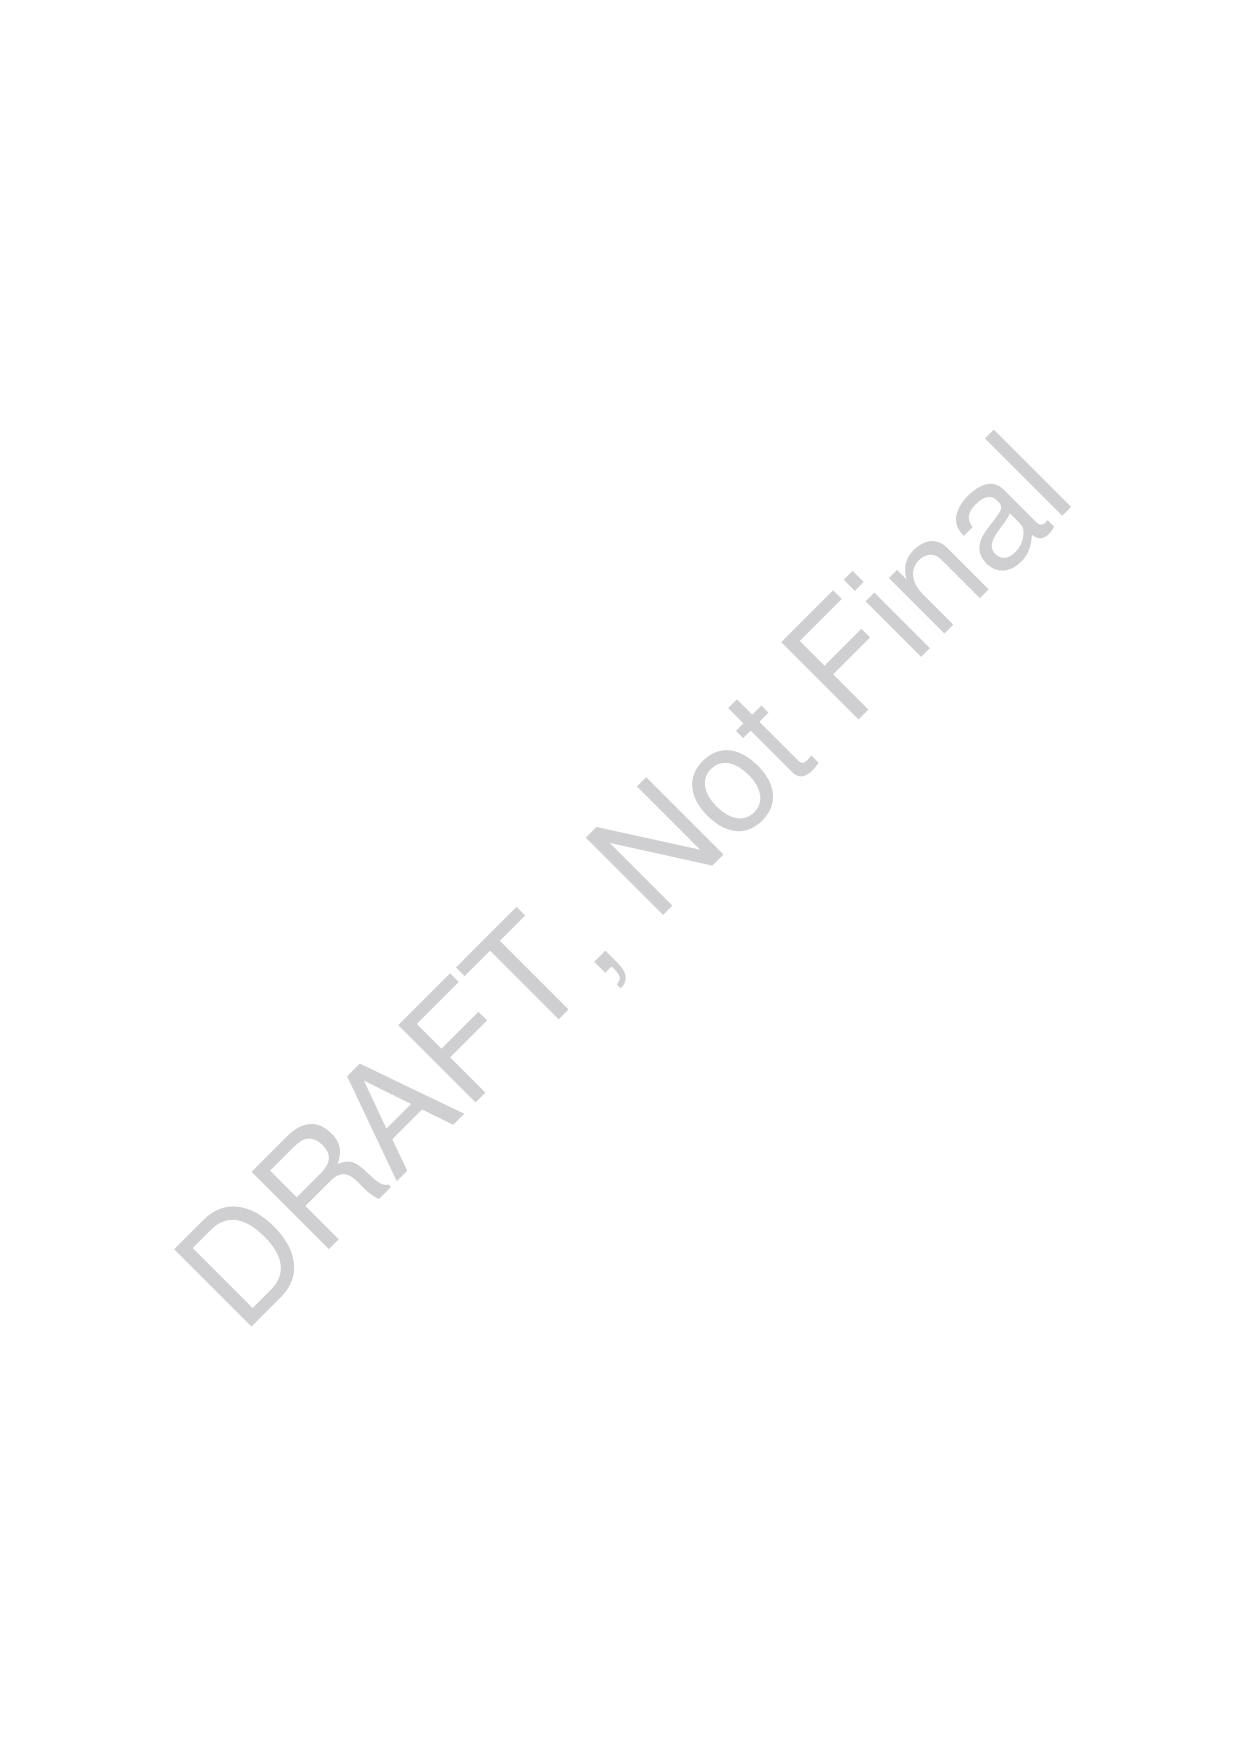 DRAFT, Not Final